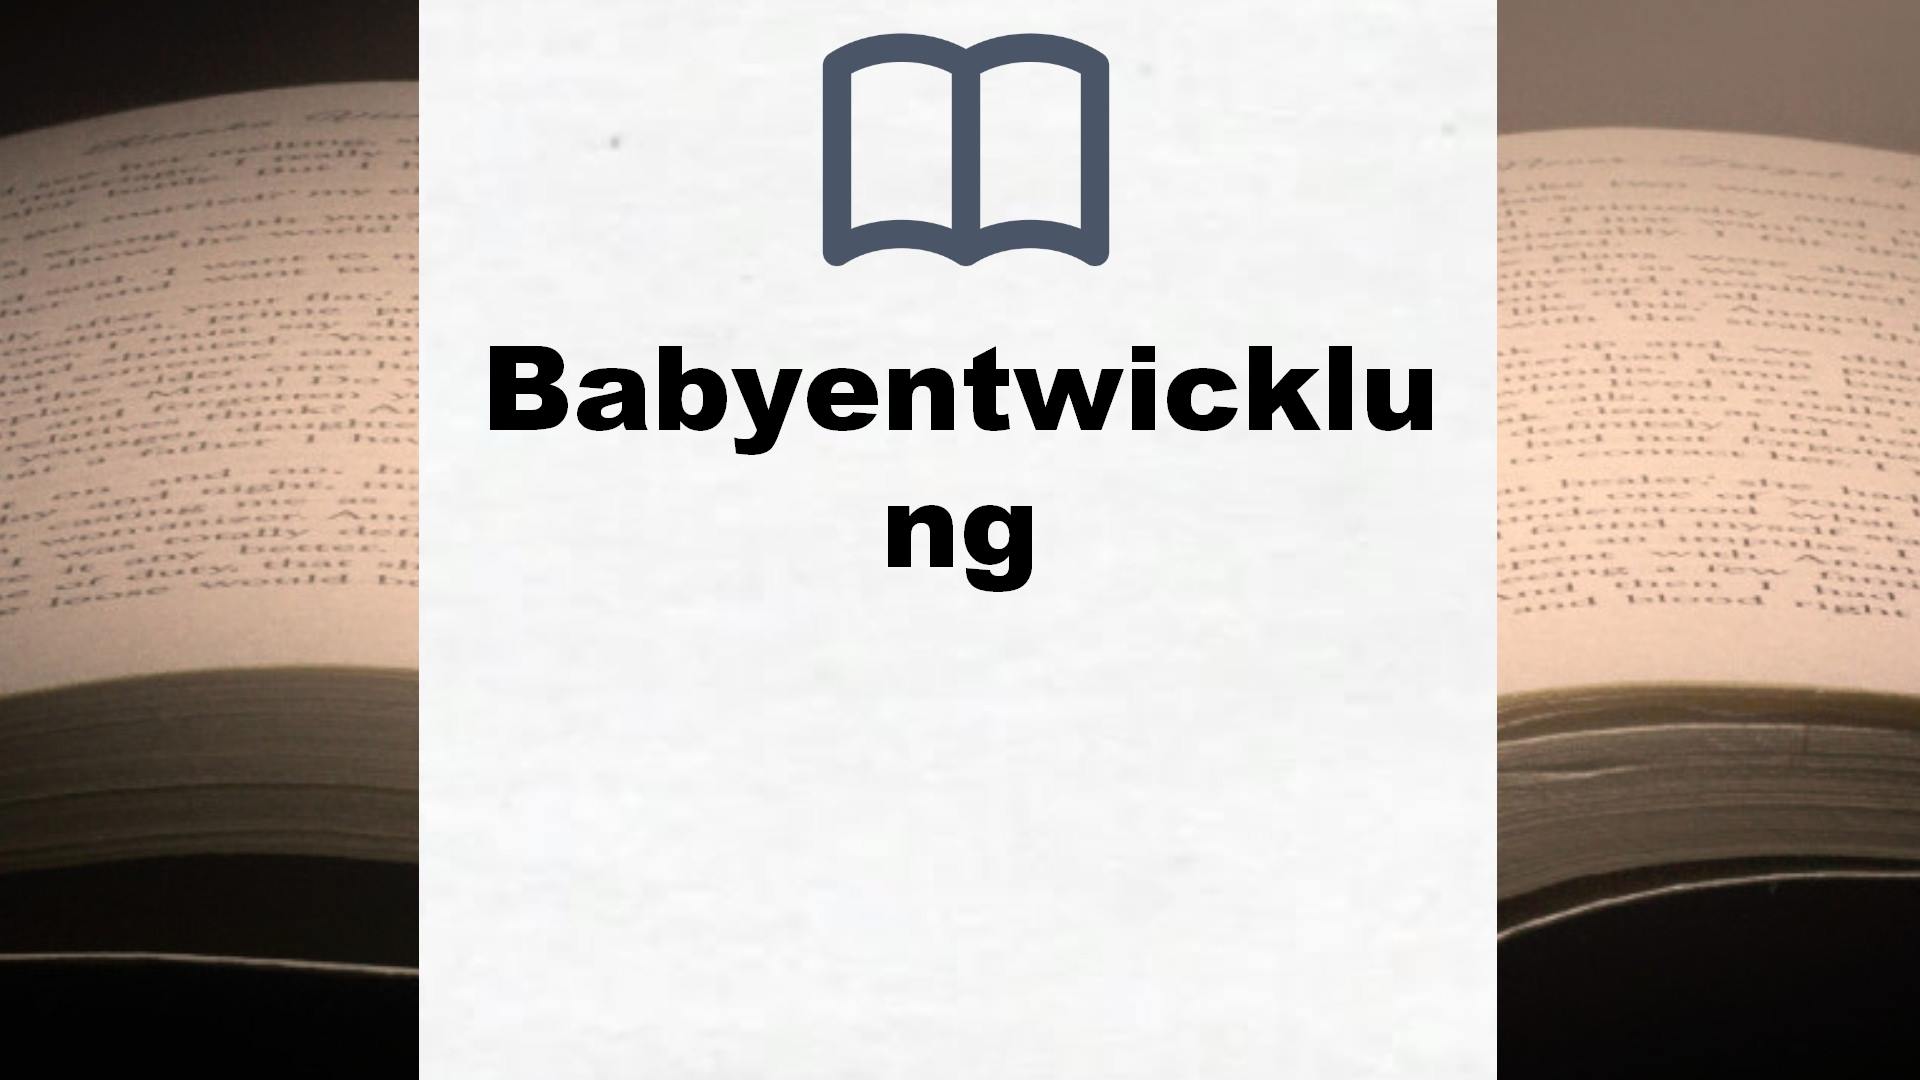 Bücher über Babyentwicklung